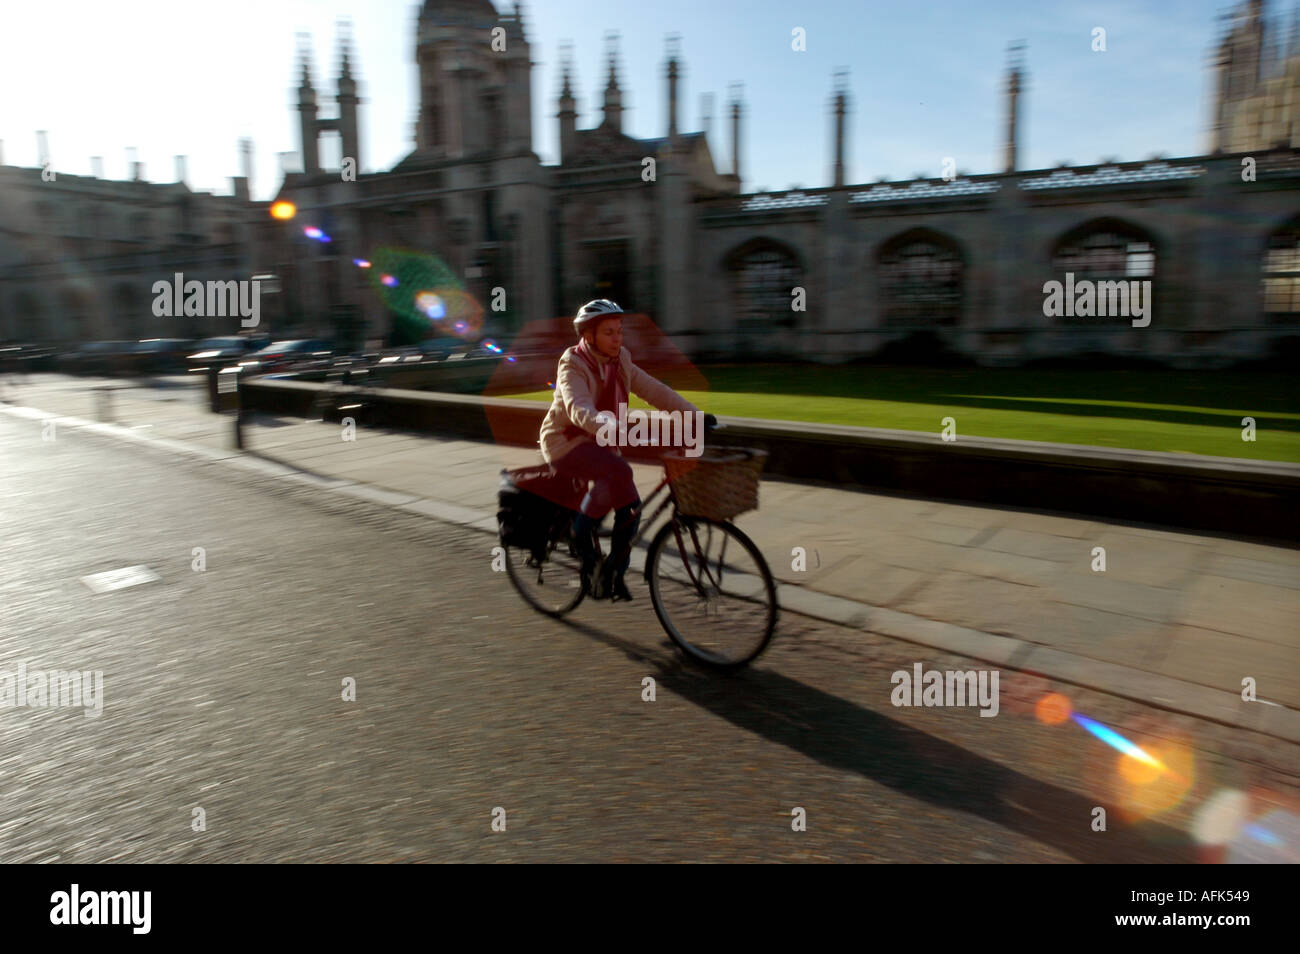 Cambridge, Inghilterra. Studente utilizzando le biciclette per ottenere intorno alla città universitaria di Cambridge passando il Kings College. Foto Stock